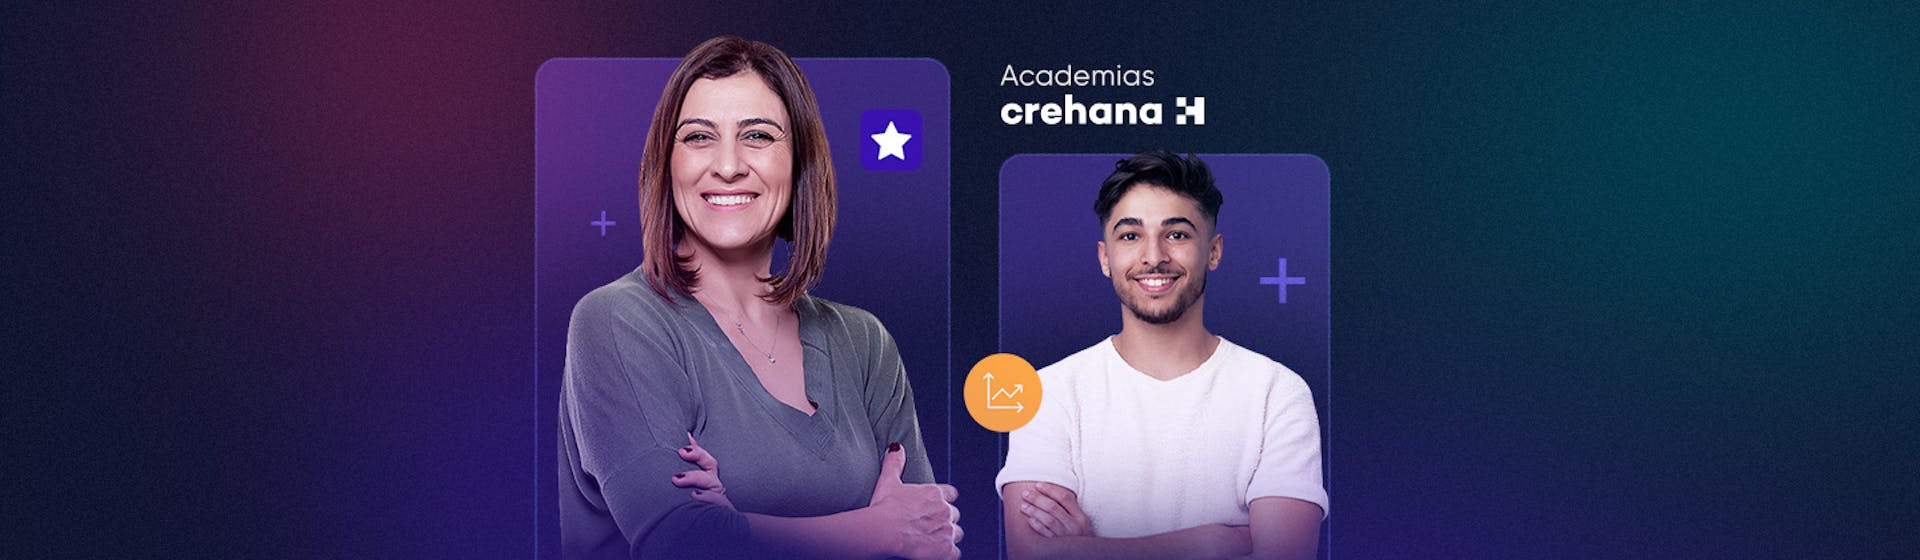 Academias Crehana: ¡la solución de aprendizaje que tu equipo necesita!